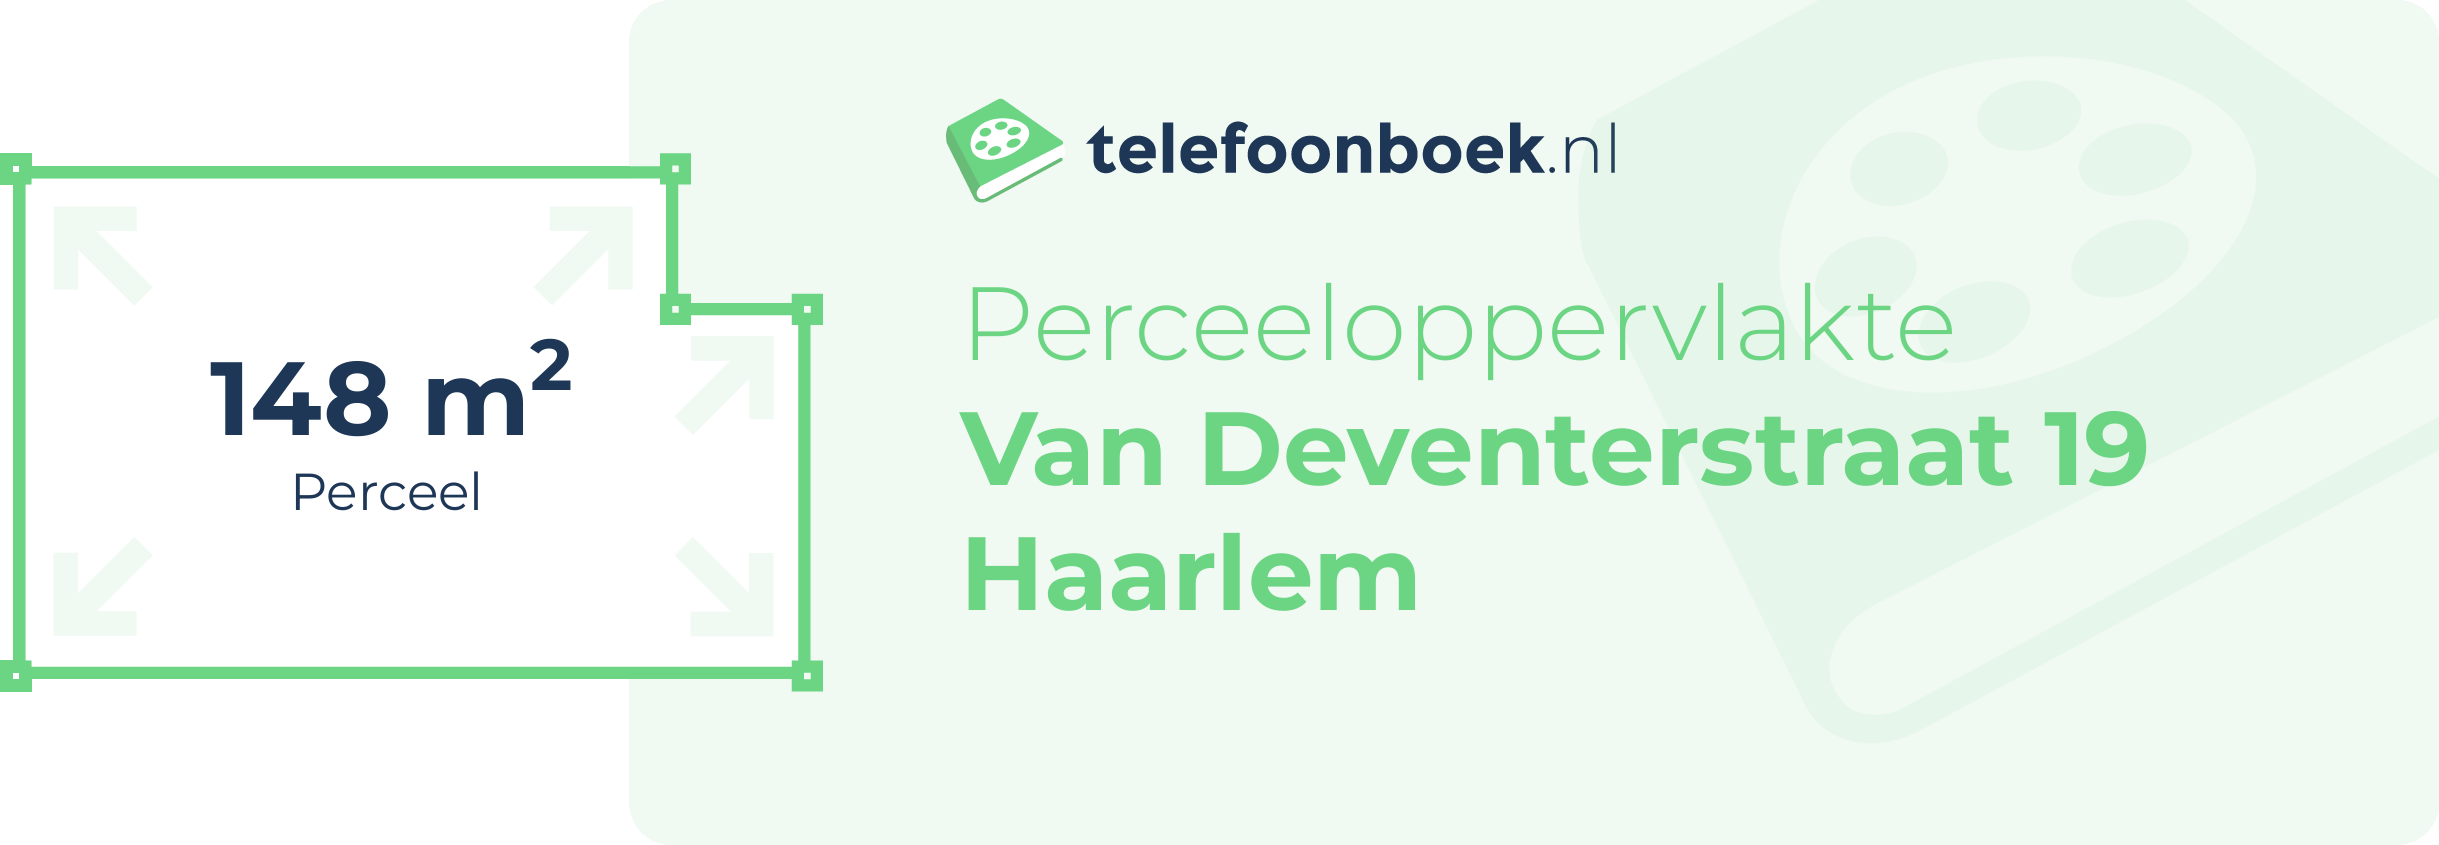 Perceeloppervlakte Van Deventerstraat 19 Haarlem